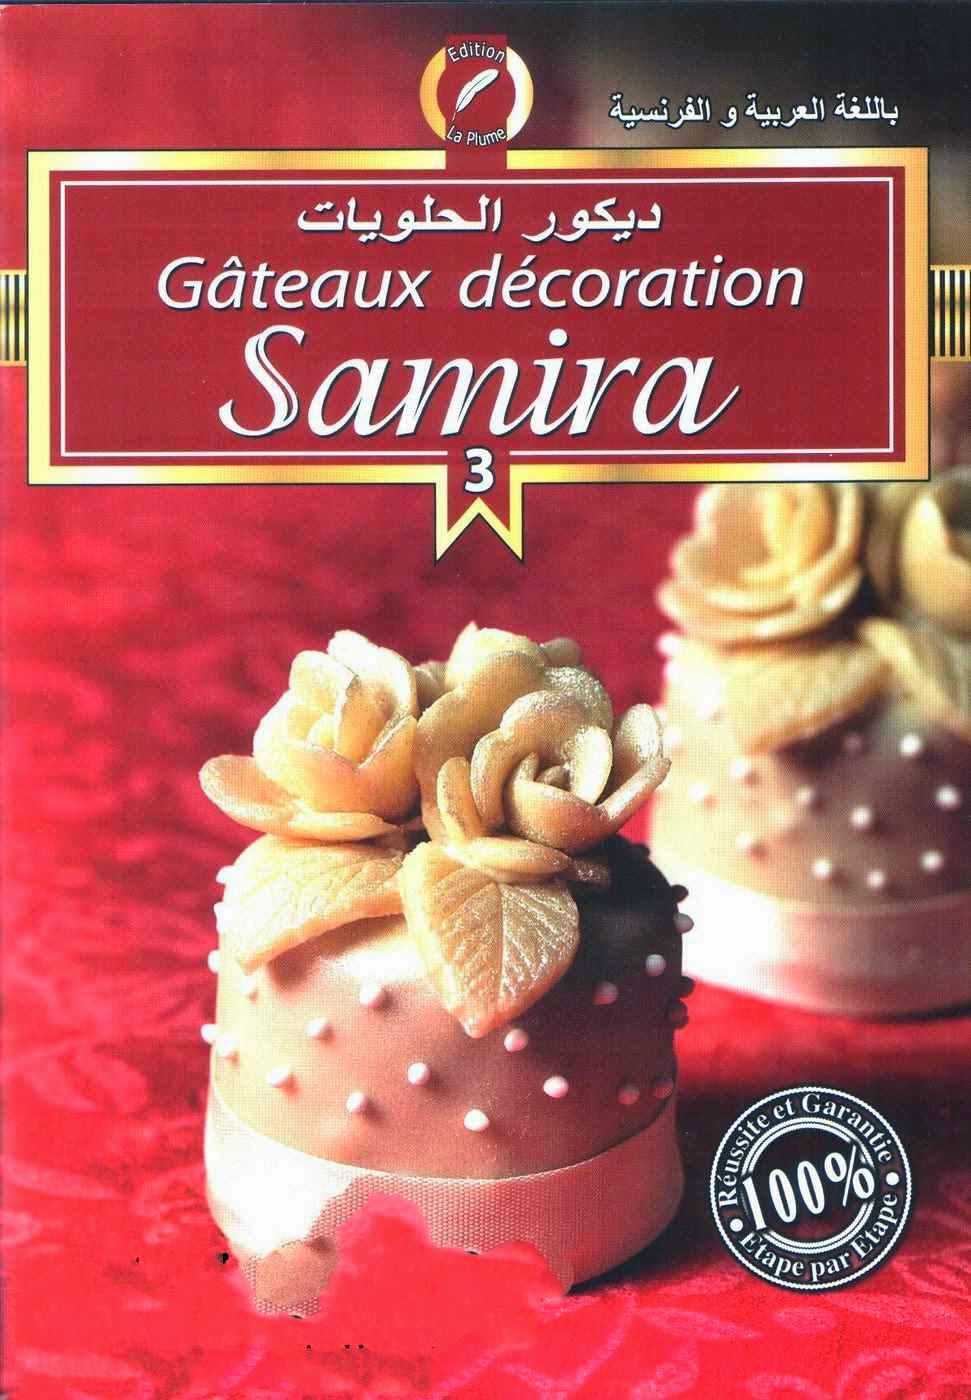 كتاب ديكور الحلويات 3 لـ سميرة باللغة العربية والفرنسية